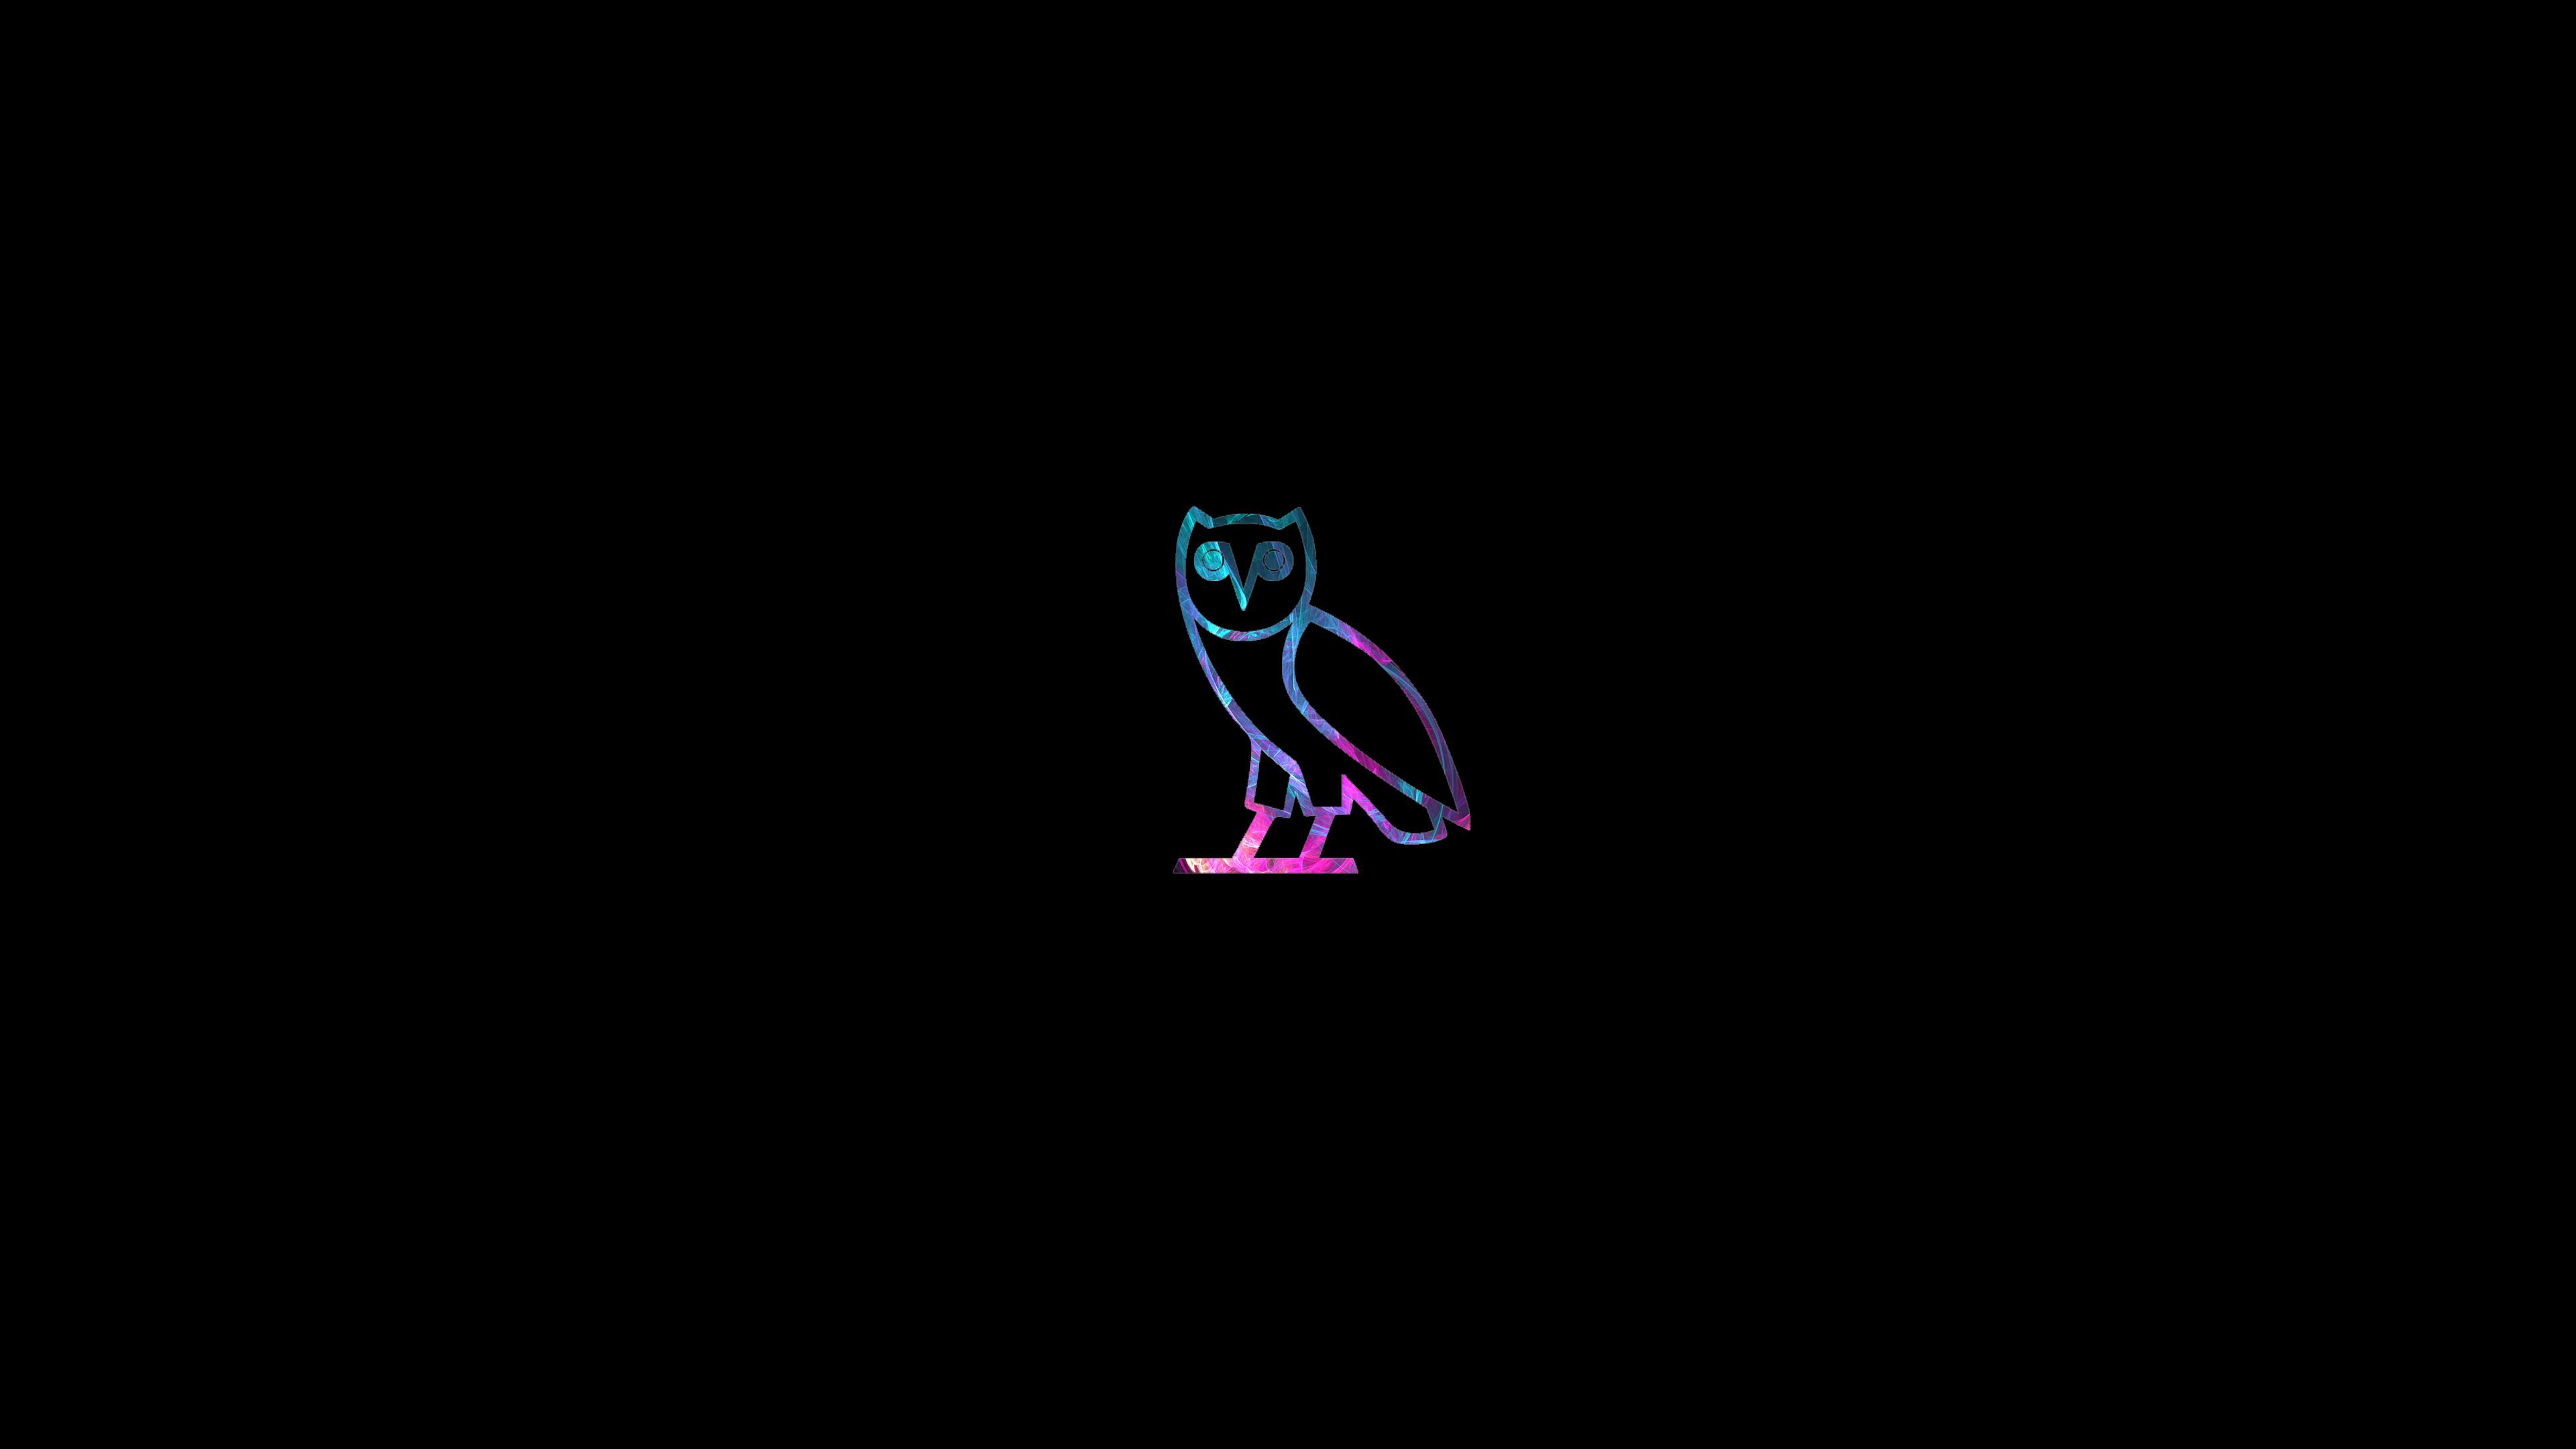 Drake Owl Wallpapers